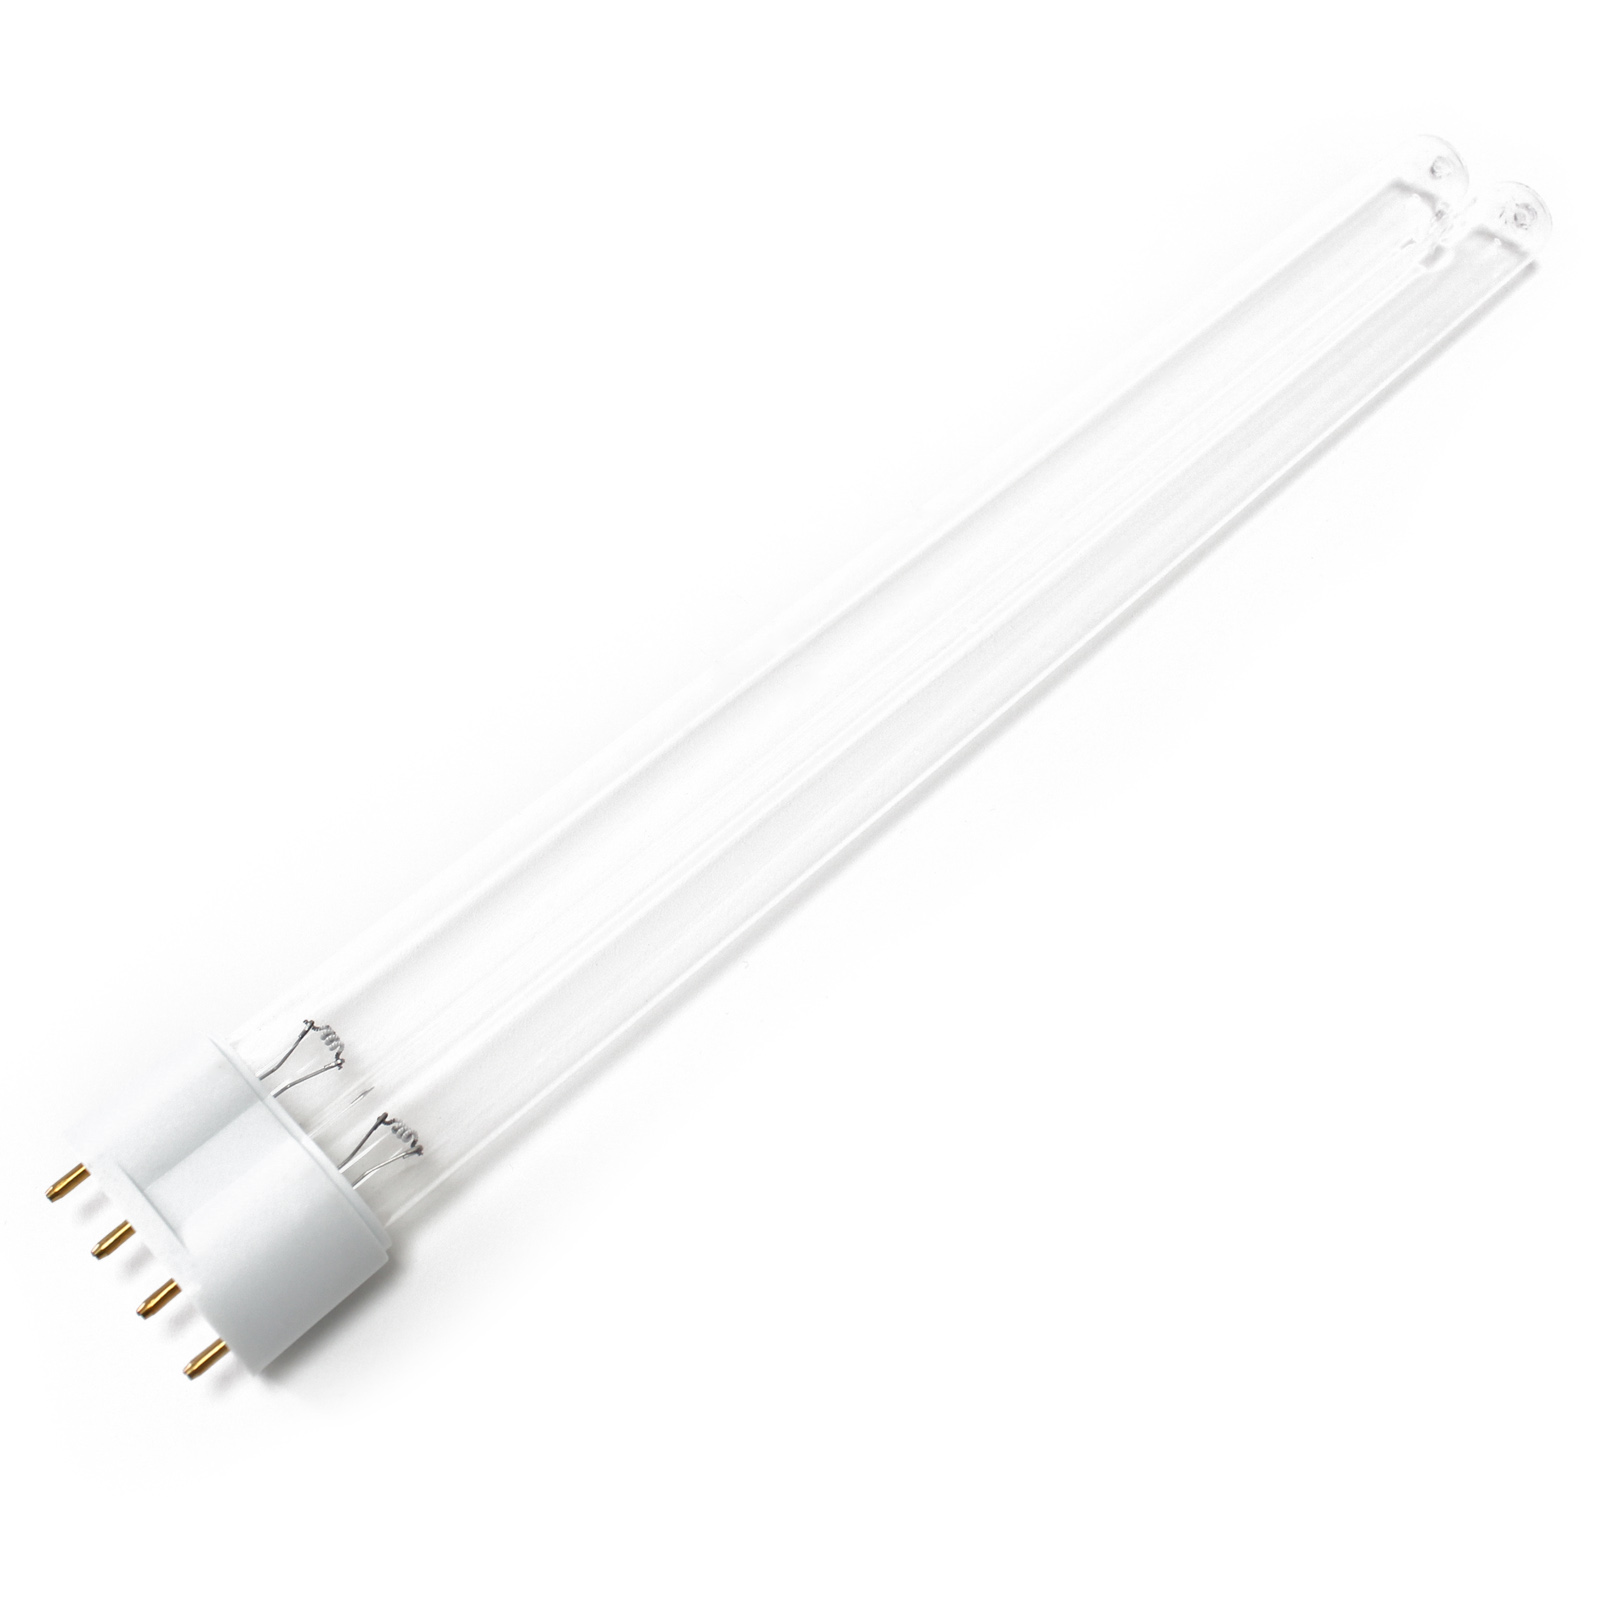 CUV-236 UV-C Lampe Röhre 36W Teich-Klärer UVC Leuchtmittel